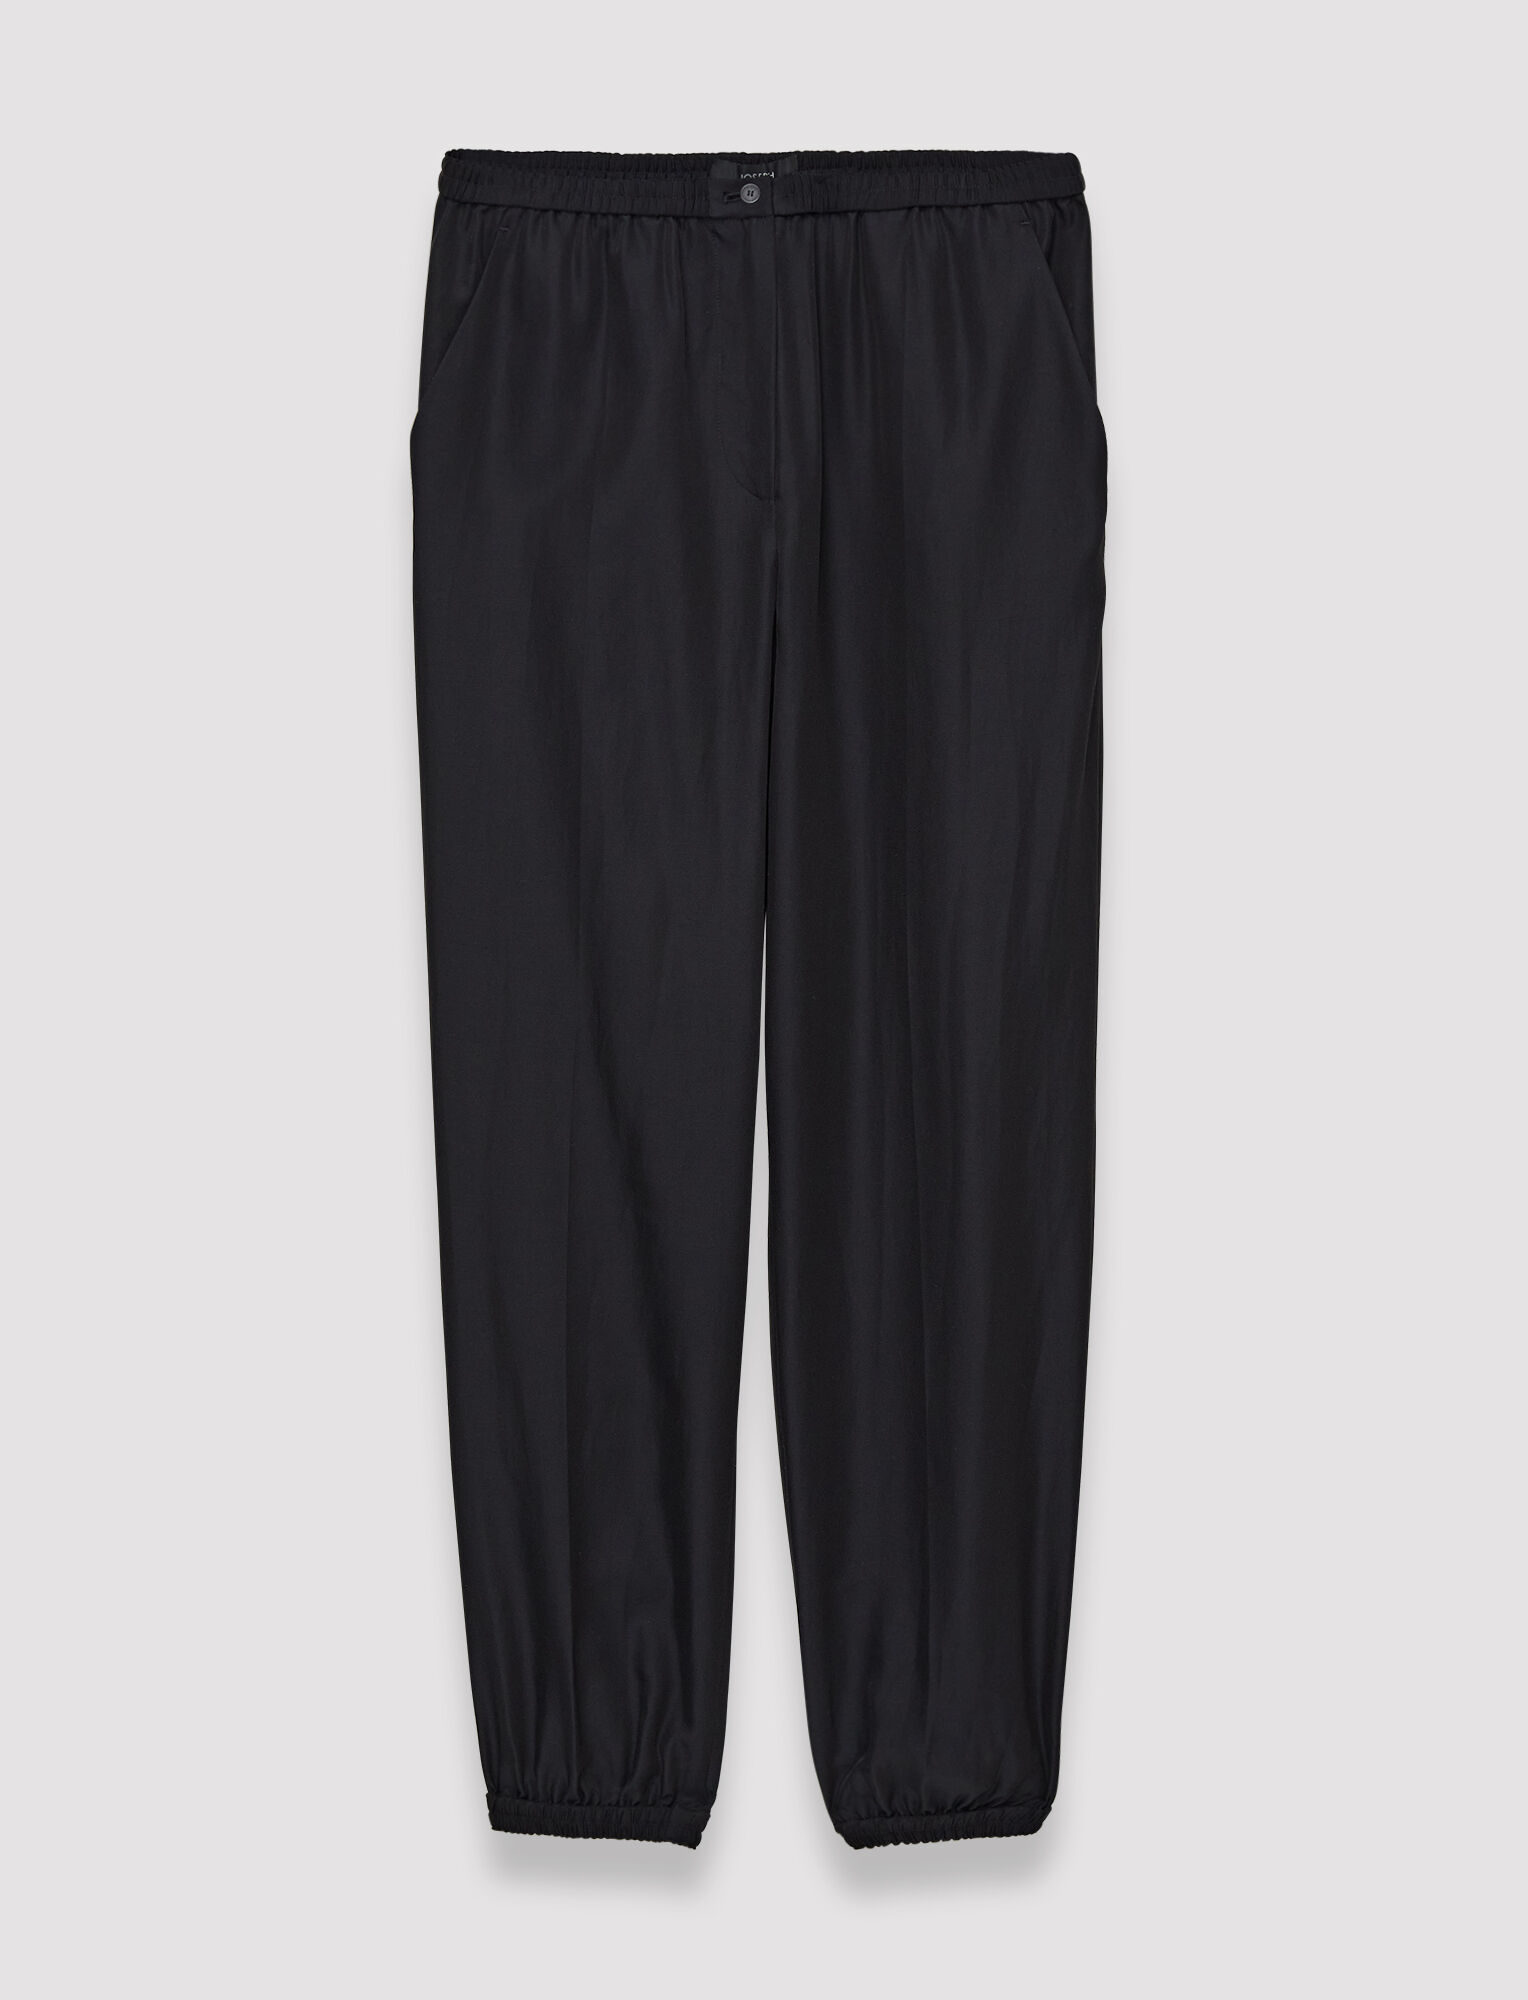 Joseph, Soft Cotton Silk Taio Trousers, in Black